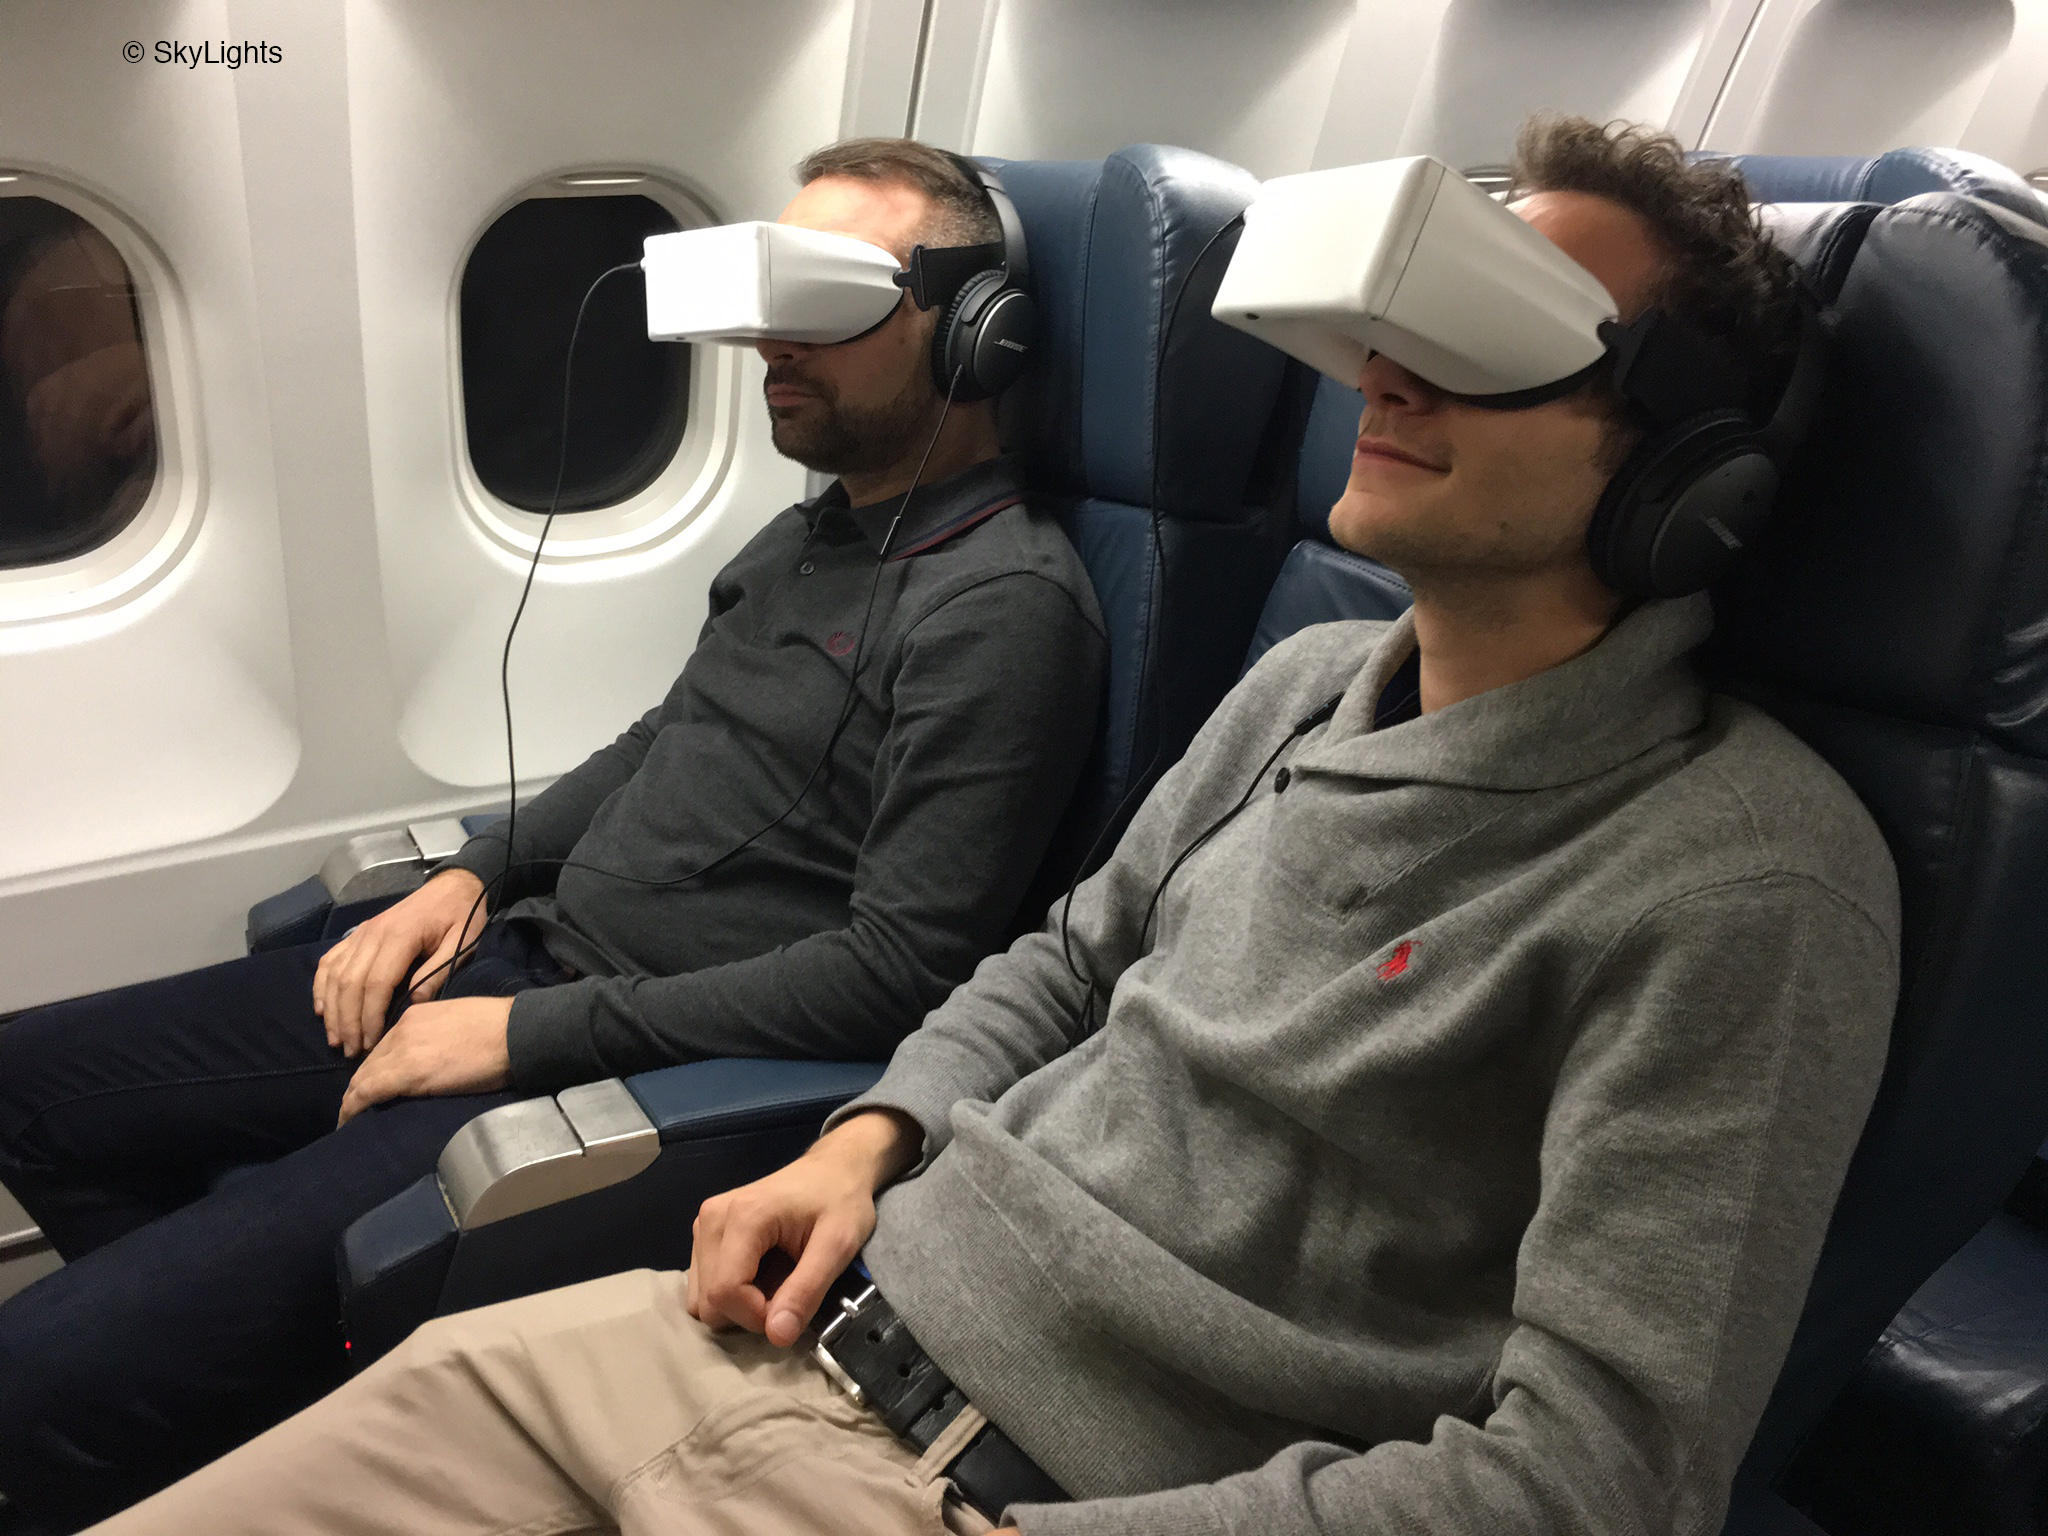 Самолеты vr. VR самолеты. Очки виртуальной реальности самолет. Наушники для полета в самолете. VR очки для самолёта.